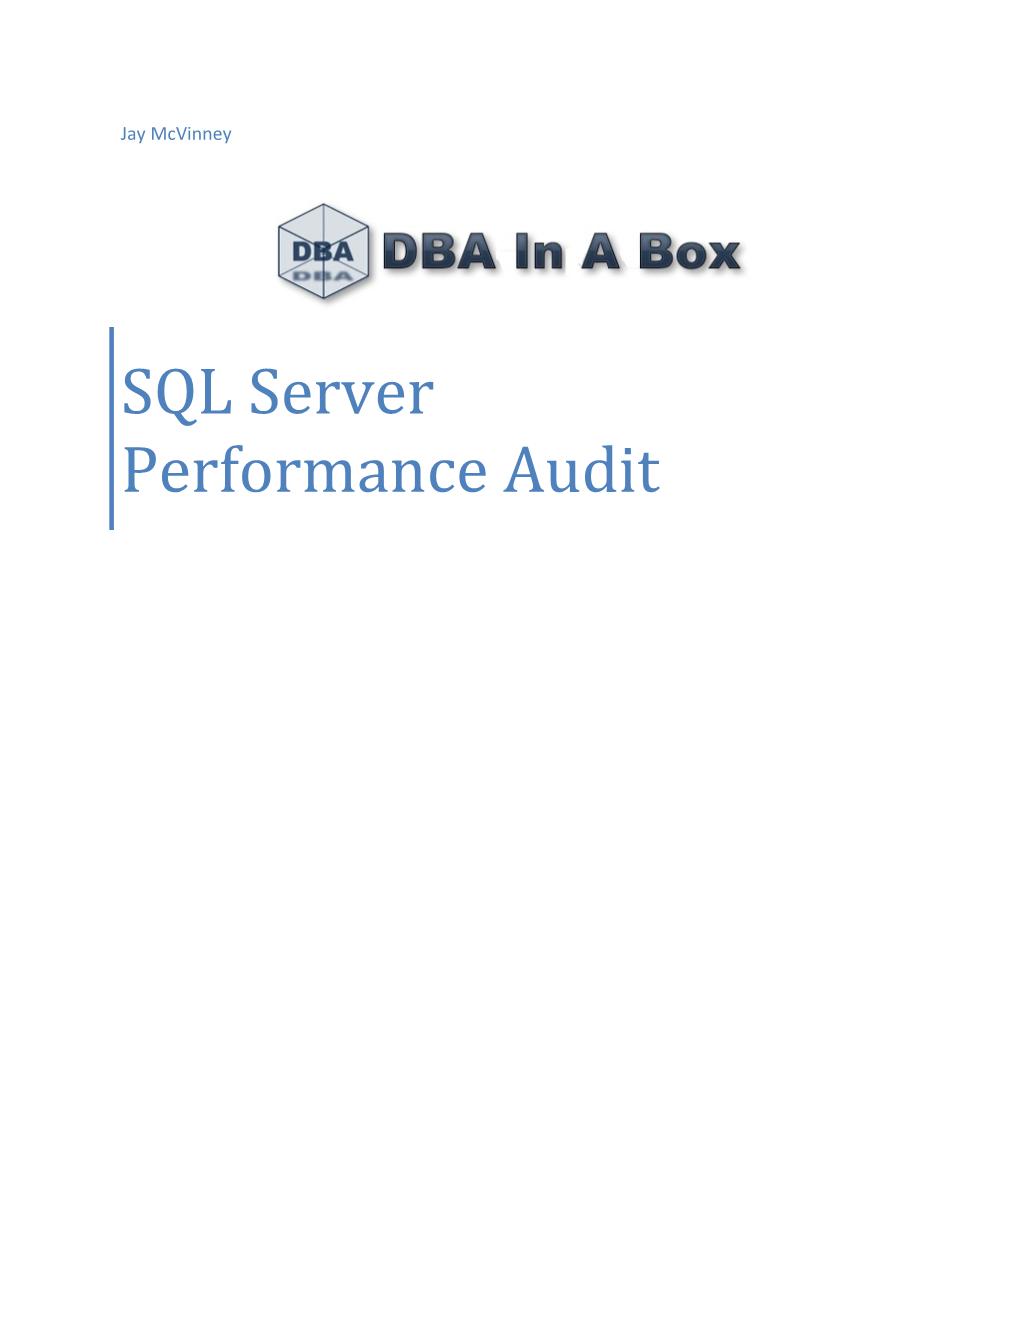 SQL Server Performance Audit Overview